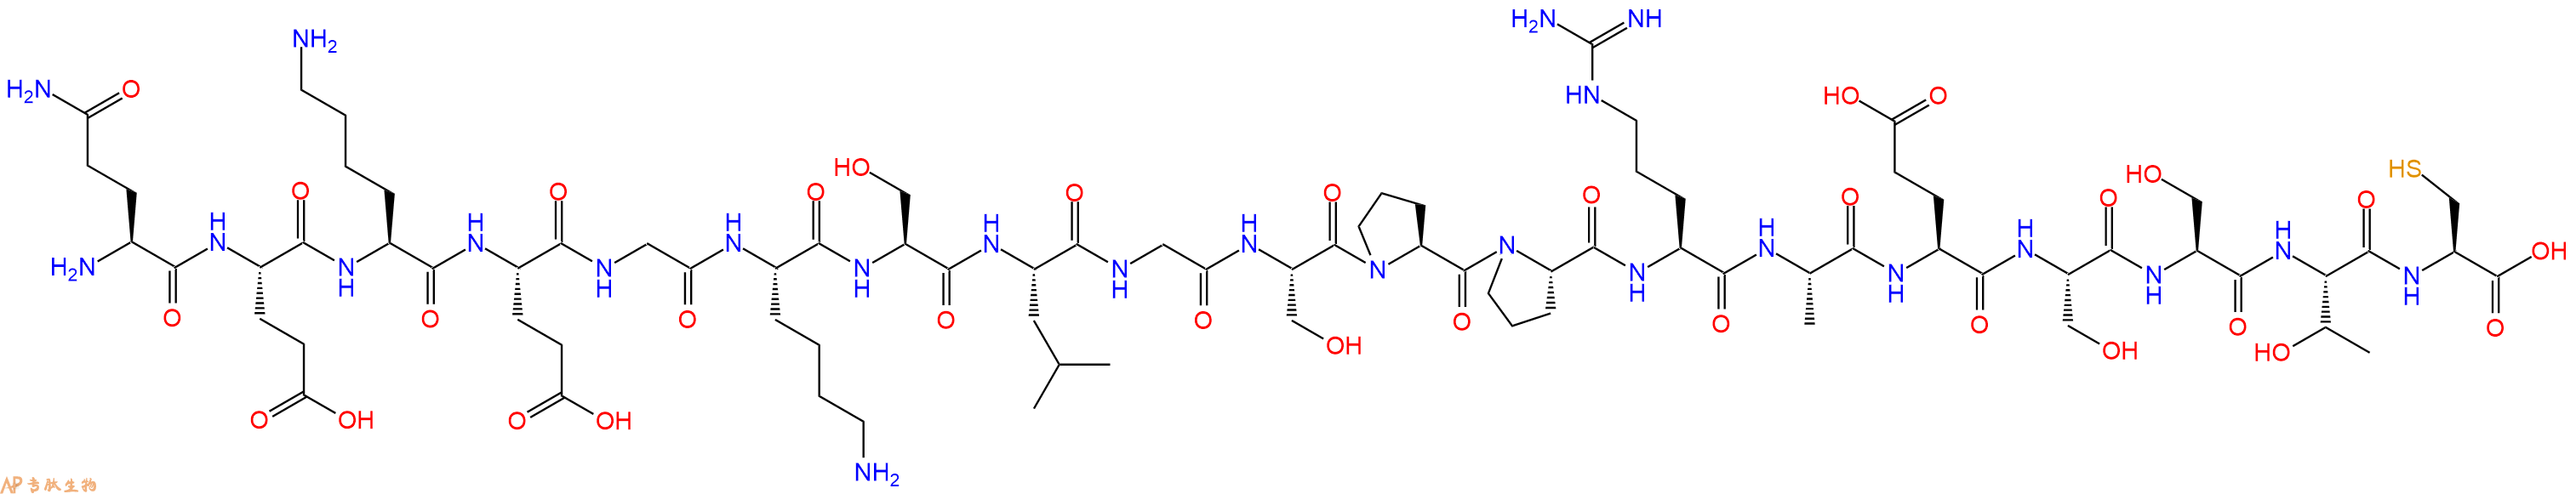 专肽生物产品H2N-Gln-Glu-Lys-Glu-Gly-Lys-Ser-Leu-Gly-Ser-Pro-Pr